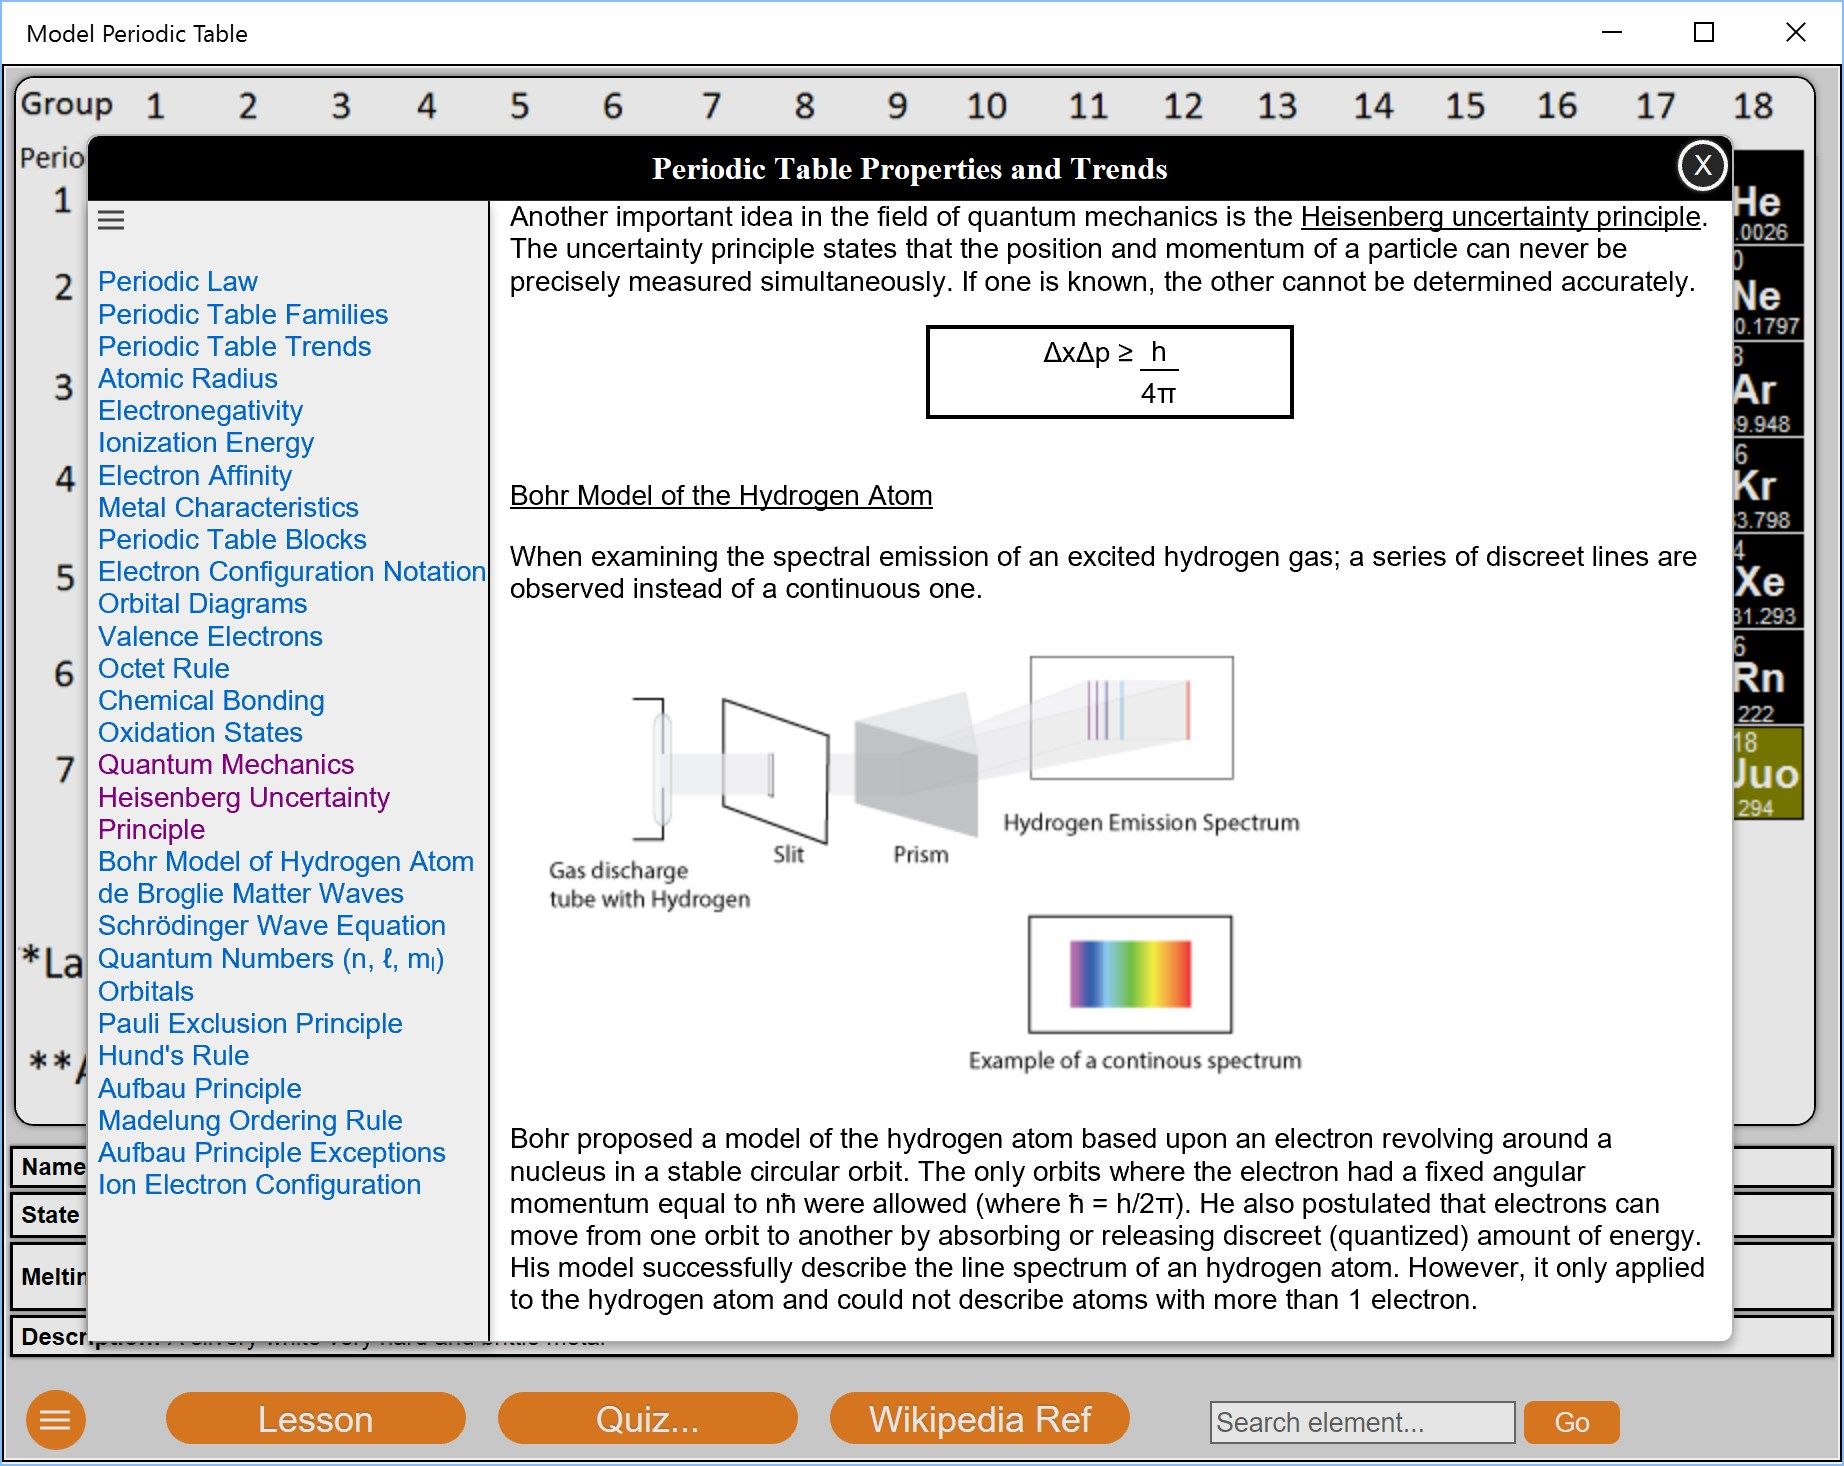 Model Periodic Table Lesson Screen